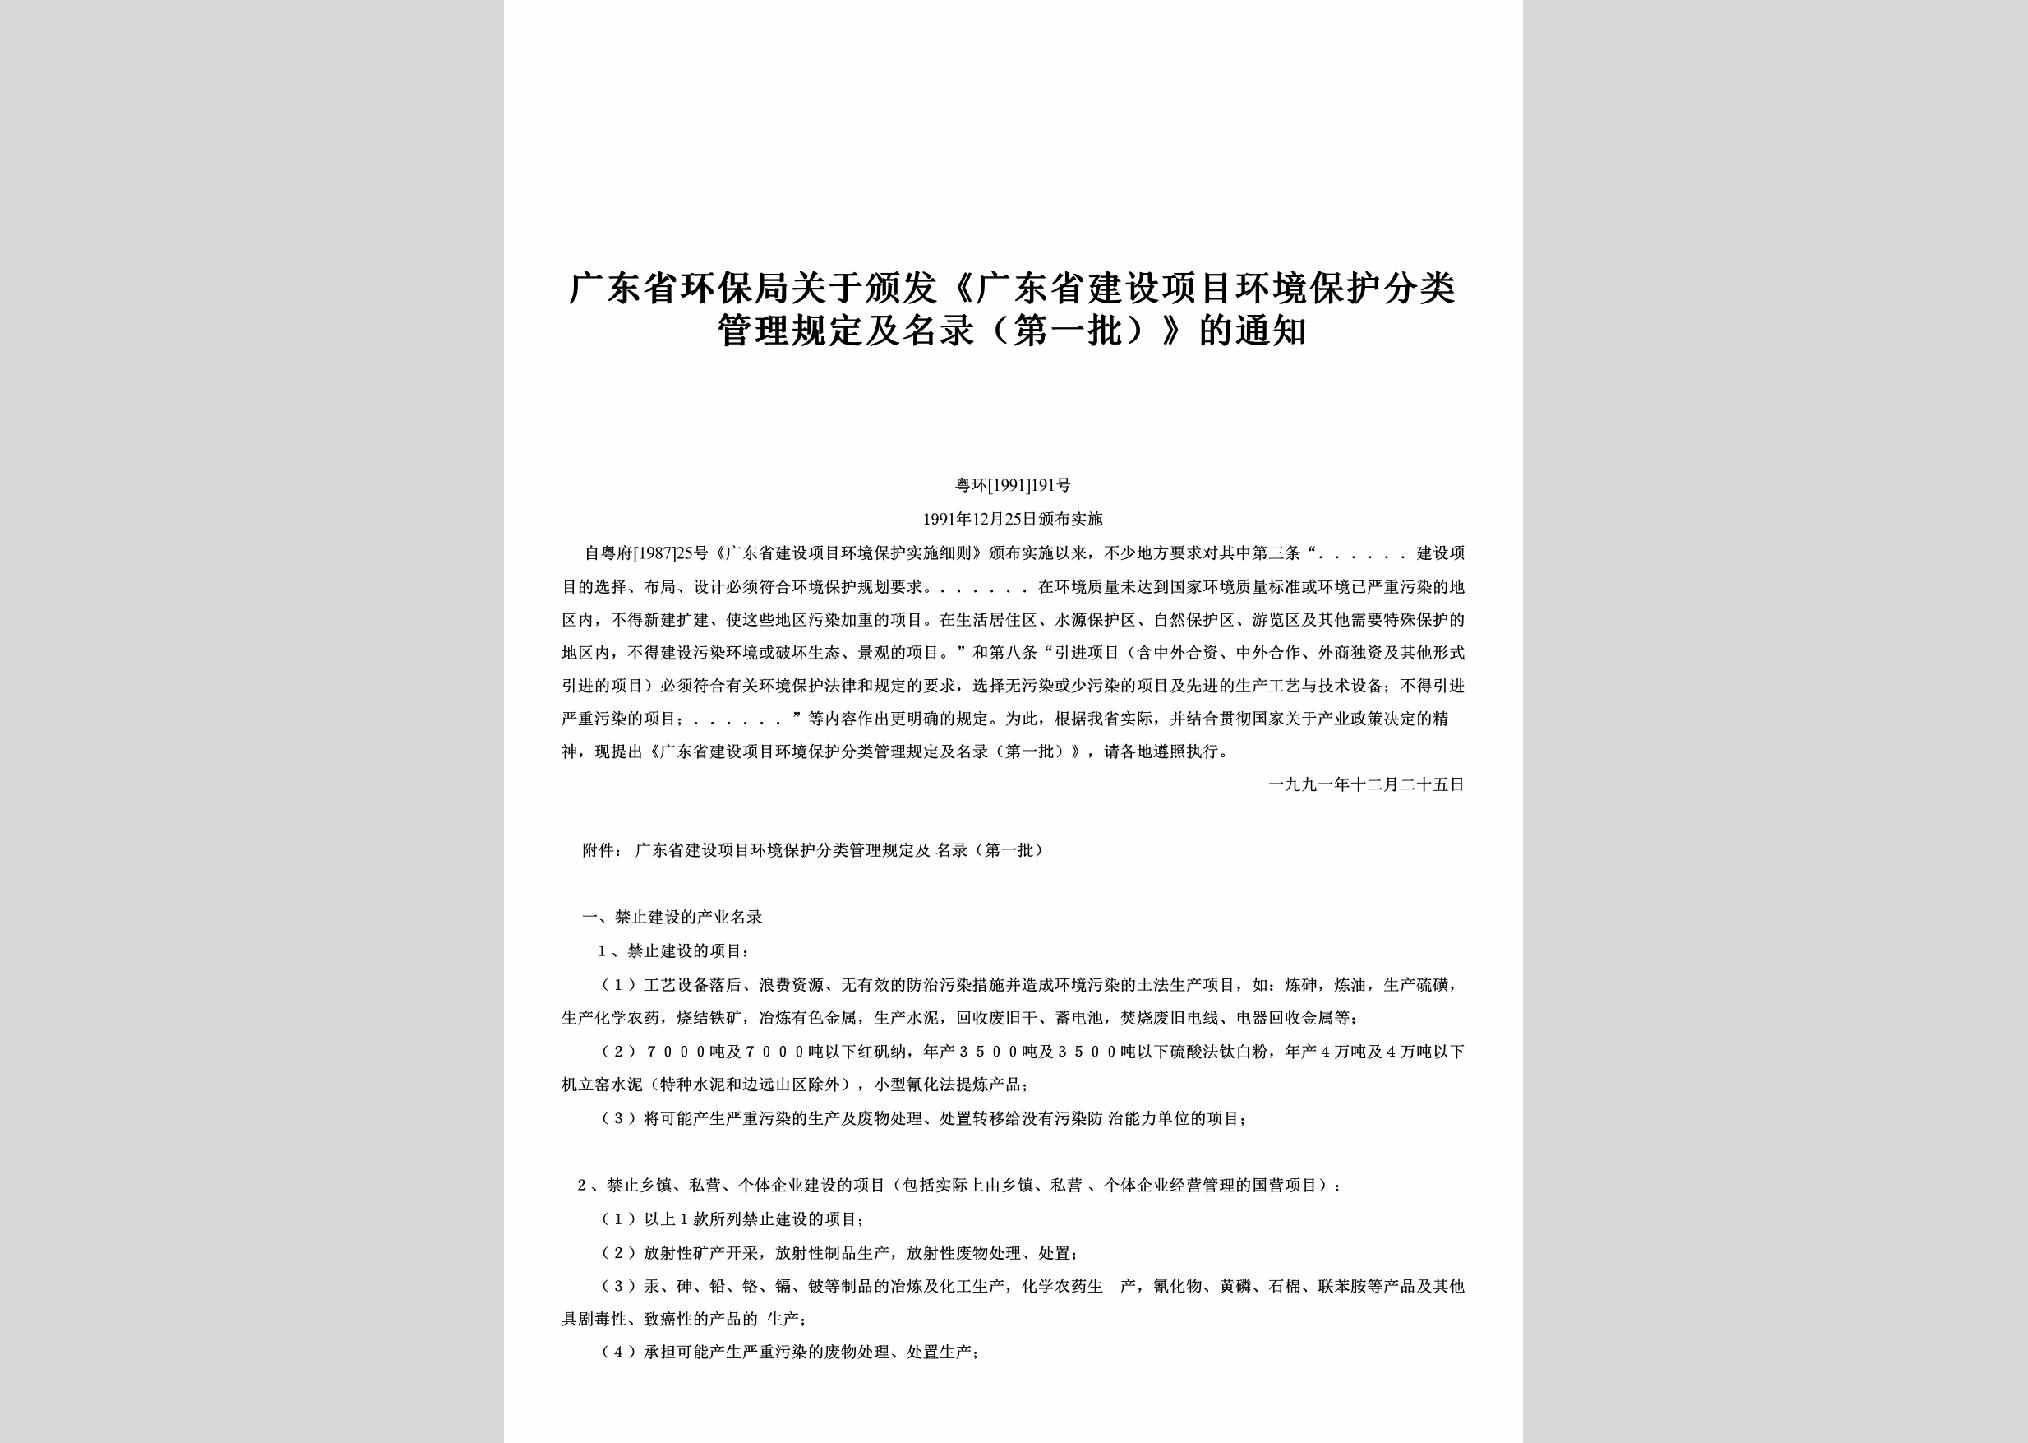 粤环[1991]191号：关于颁发《广东省建设项目环境保护分类管理规定及名录（第一批）》的通知